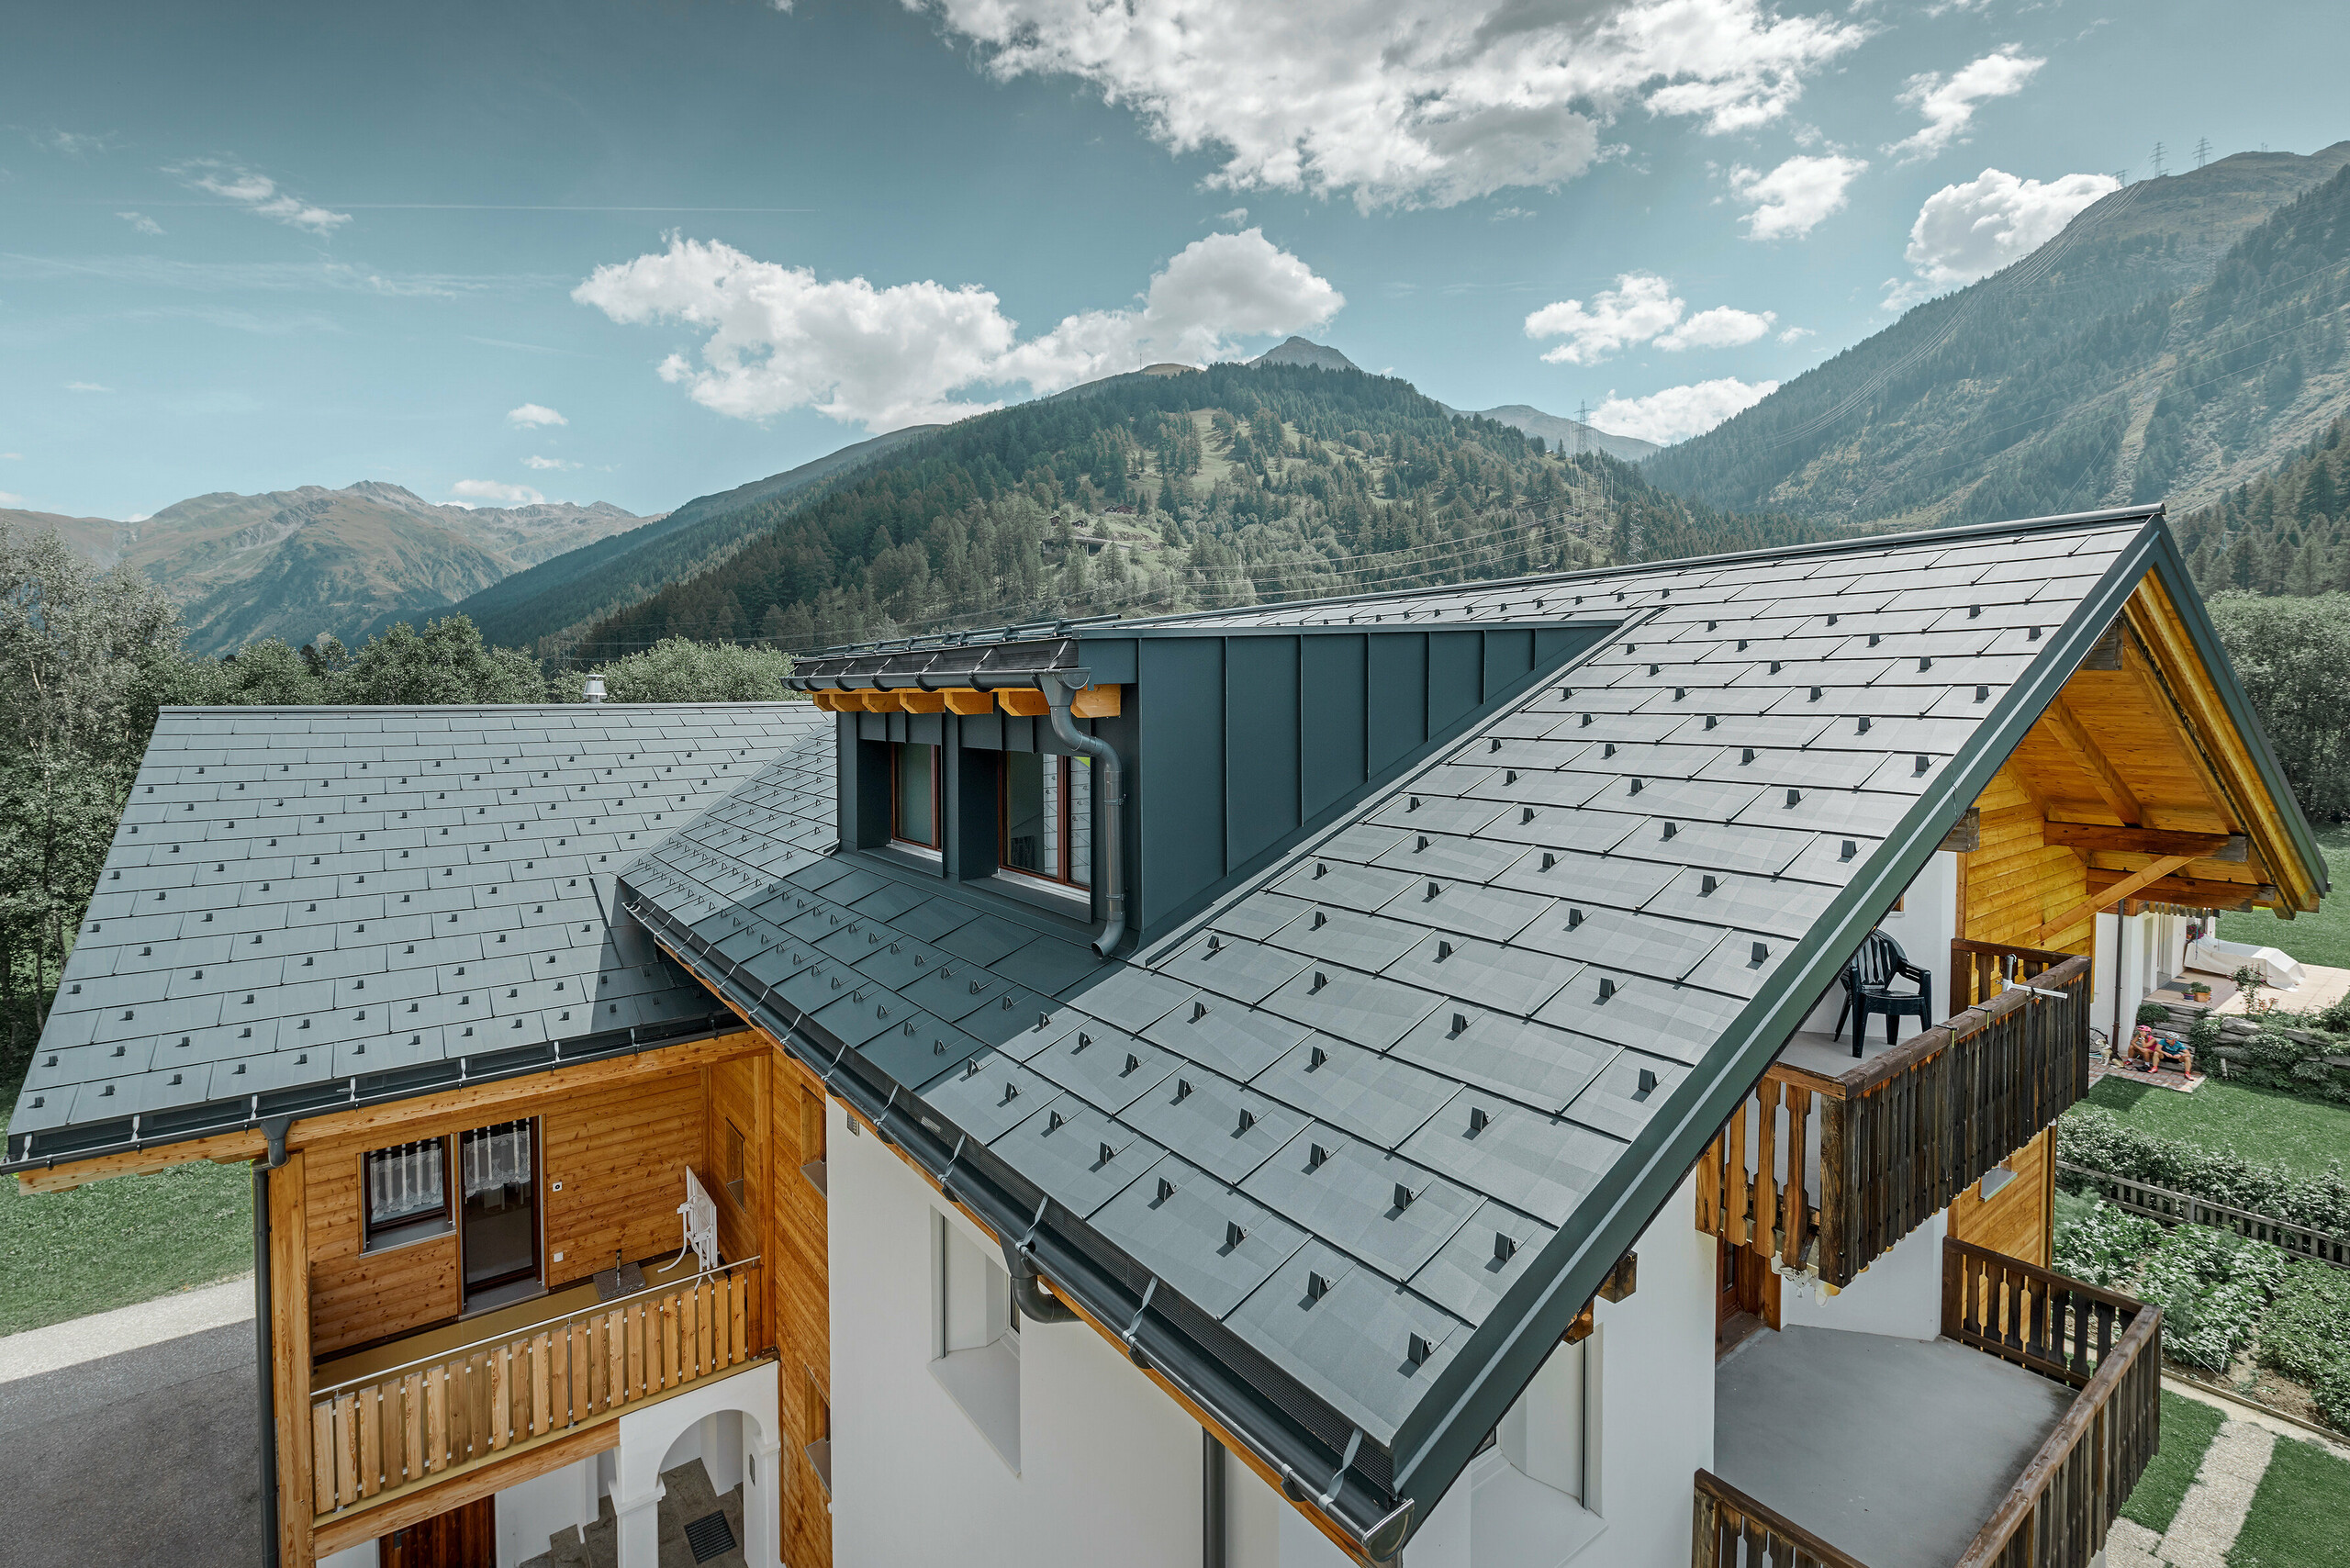 Novo sanirana stambena kuća s dvostrešnim krovom i krovnom kućicom; Sanacija krova provedena je PREFA krovnim panelom FX.12 u antracit boji.